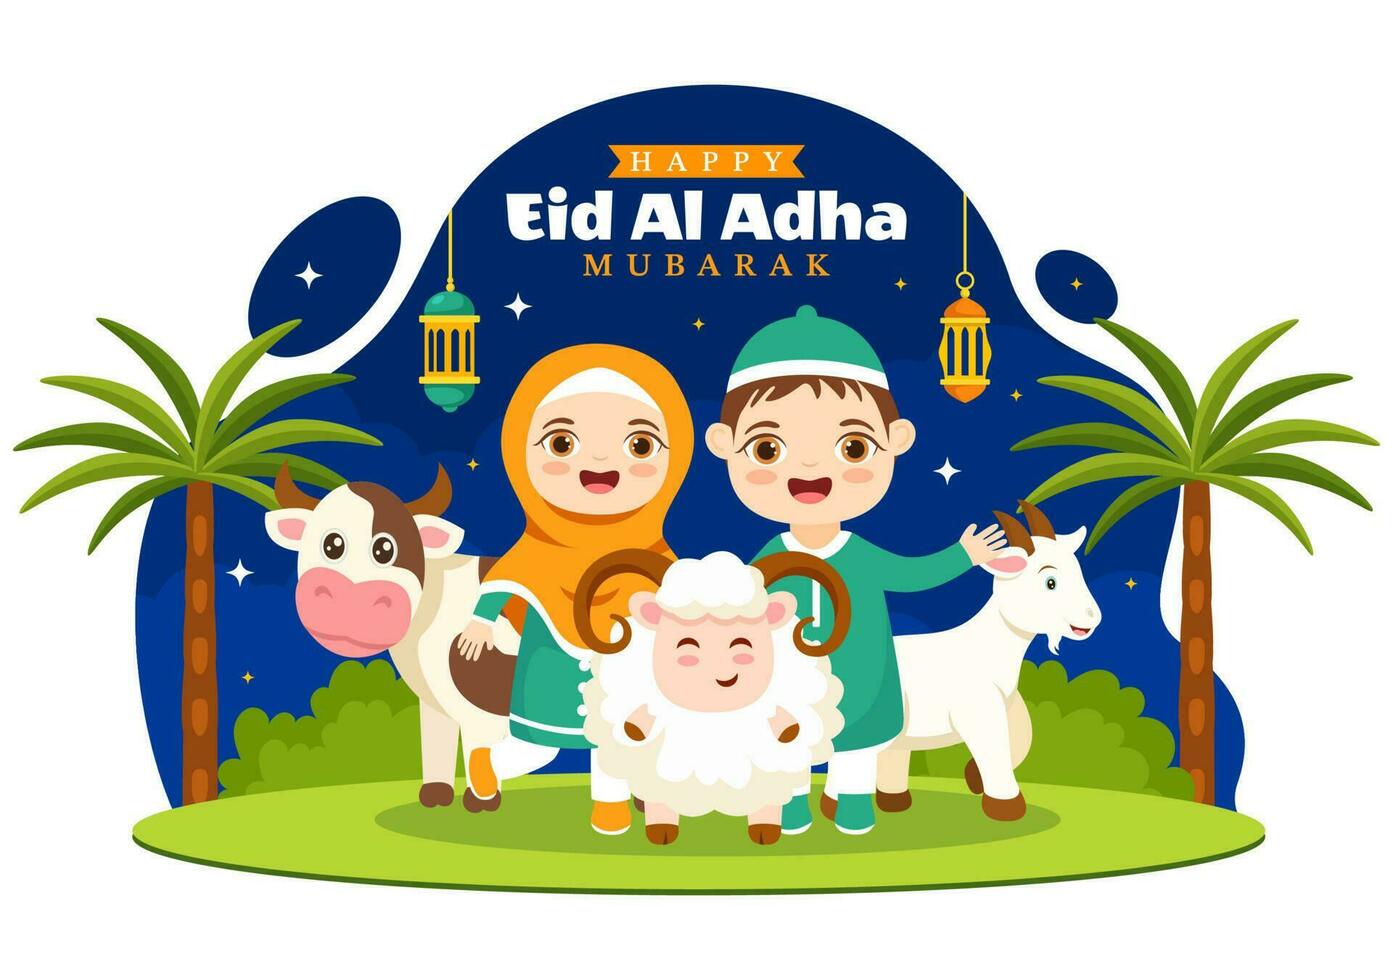 contento eid al adha mubarak vettore illustrazione di bambini I musulmani celebrazione con sacrificale animali capra e mucca nel cartone animato mano disegnato modelli